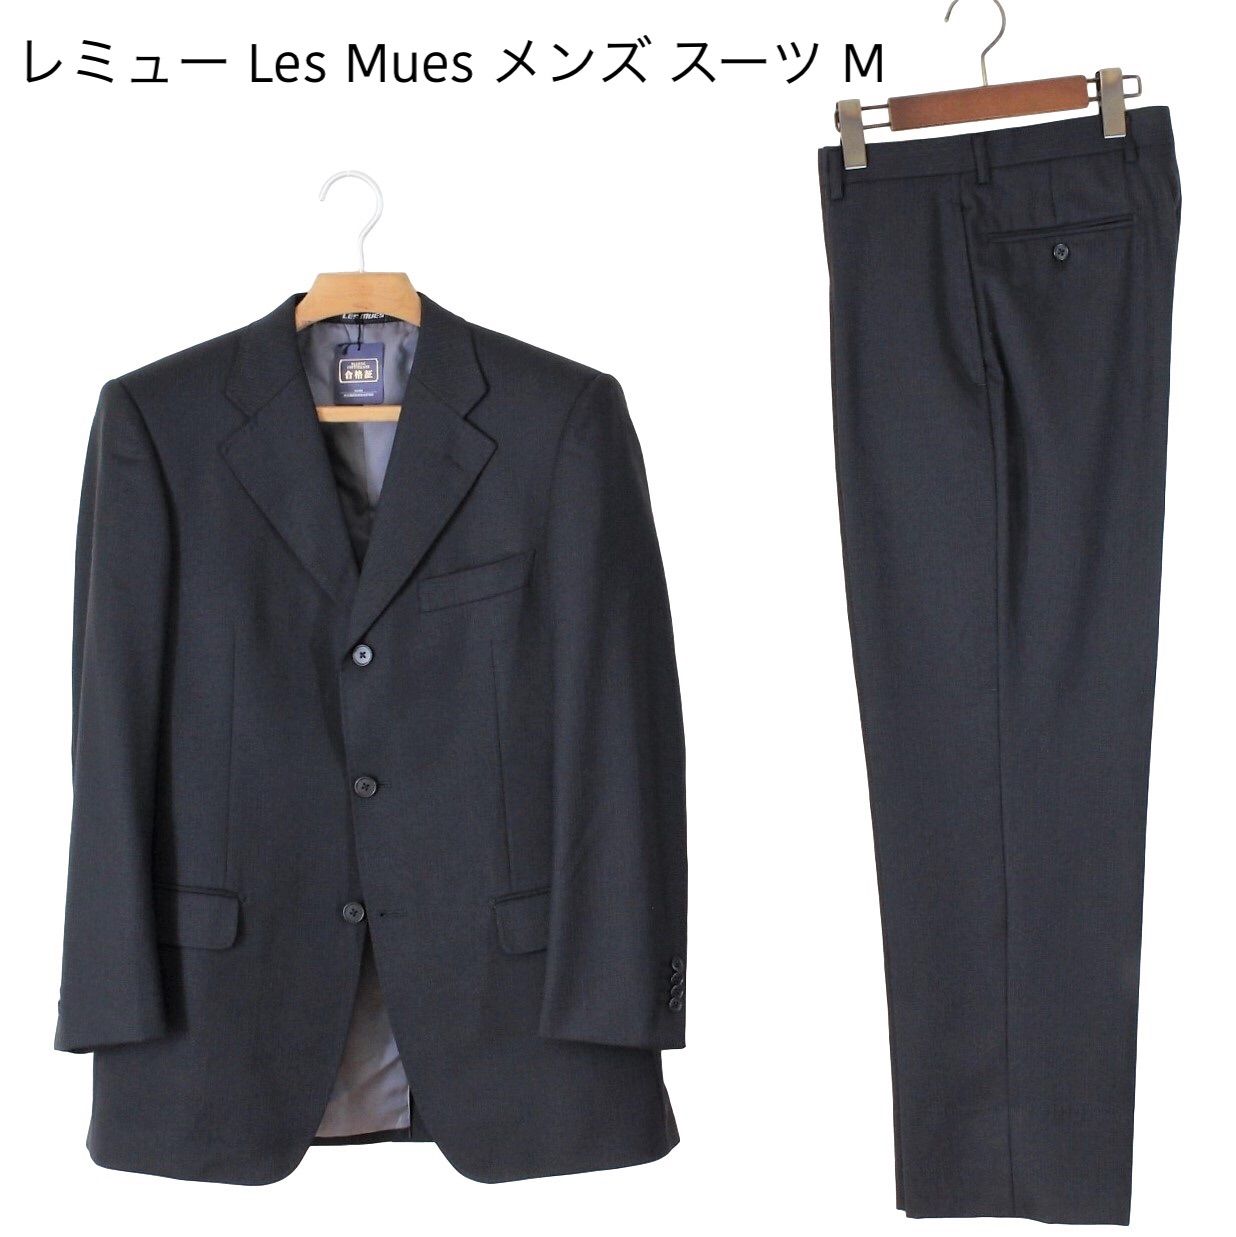 新品未使用 Les Mues レ ミュー スーツ Y5 メンズ M 黒 秋冬春 程度の良い中古衣料店 メルカリ